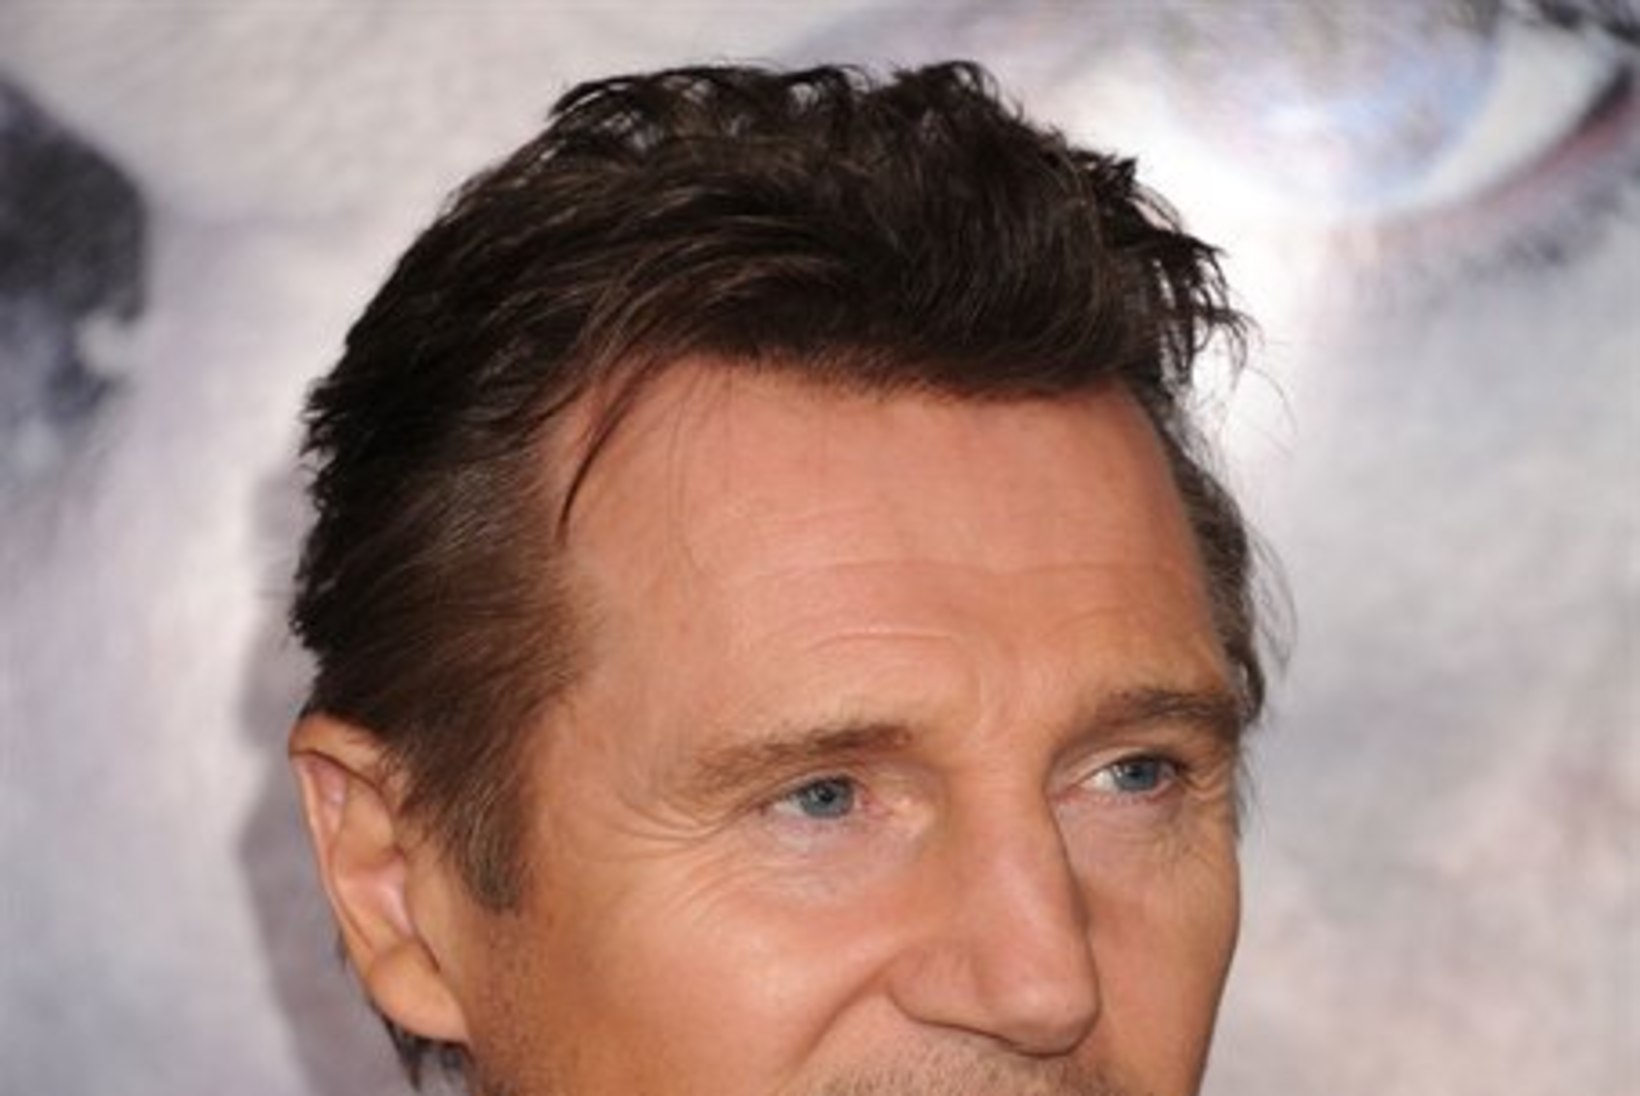 Liam Neesoni parim enne on möödas?